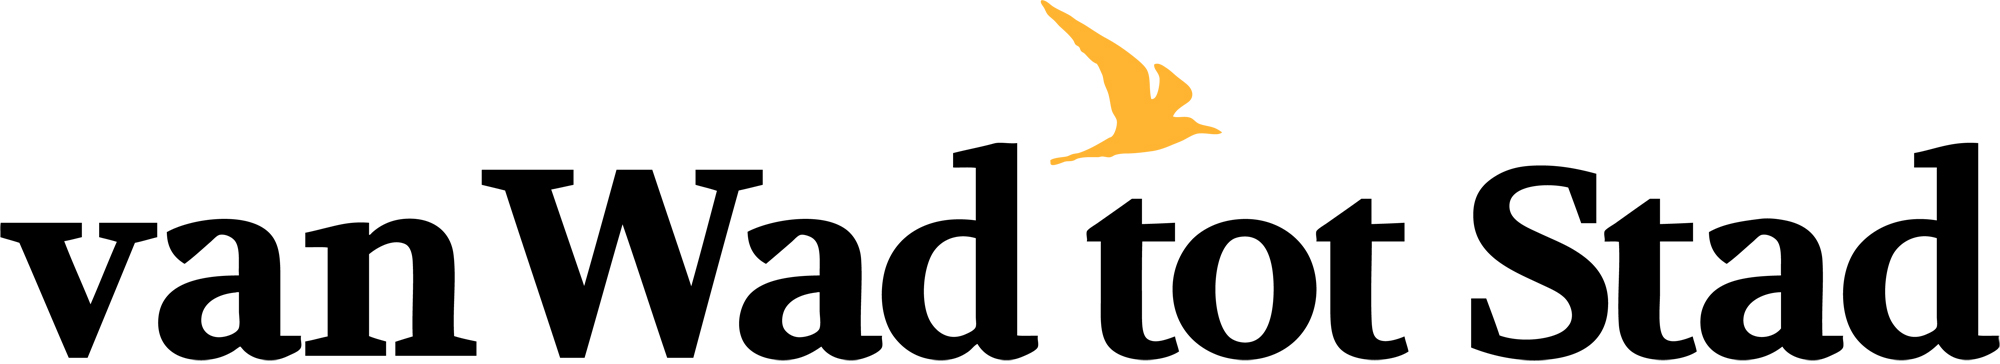 Van Wad tot Stad logo